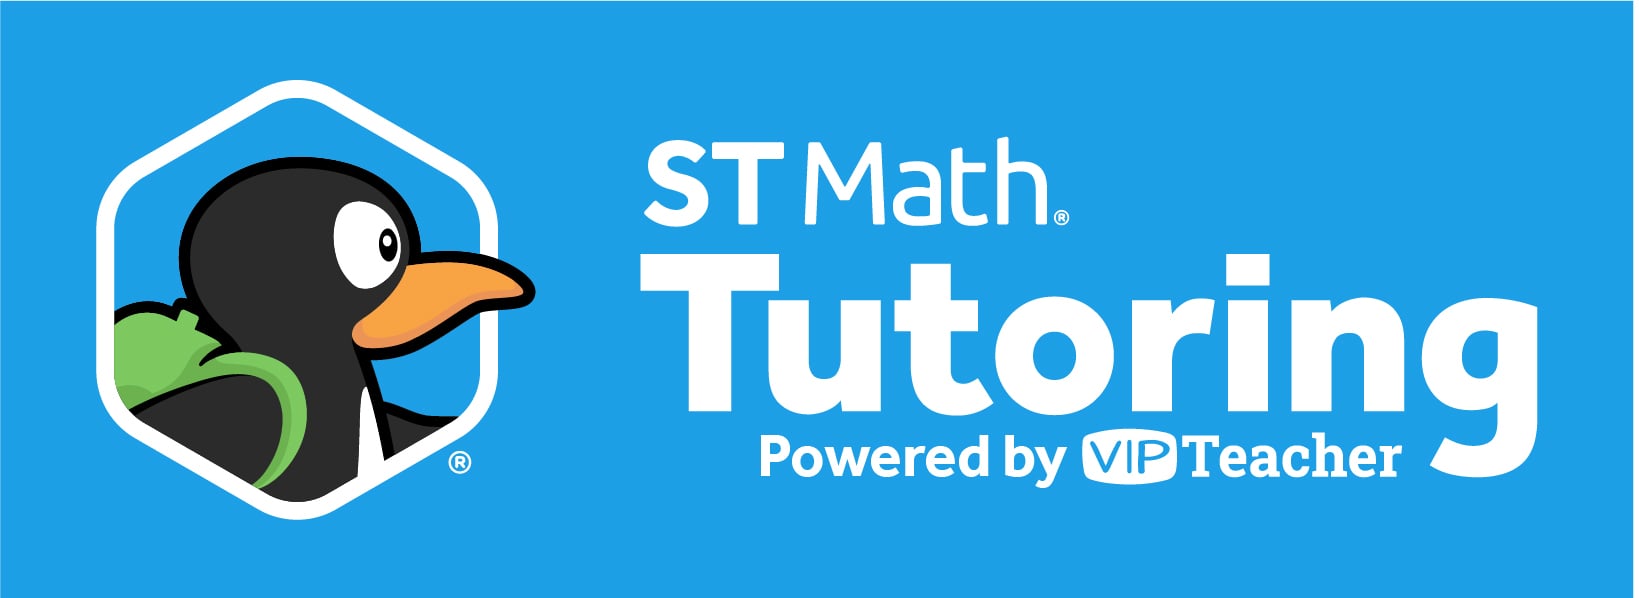 ST-Math_Logo_Tutoring_White